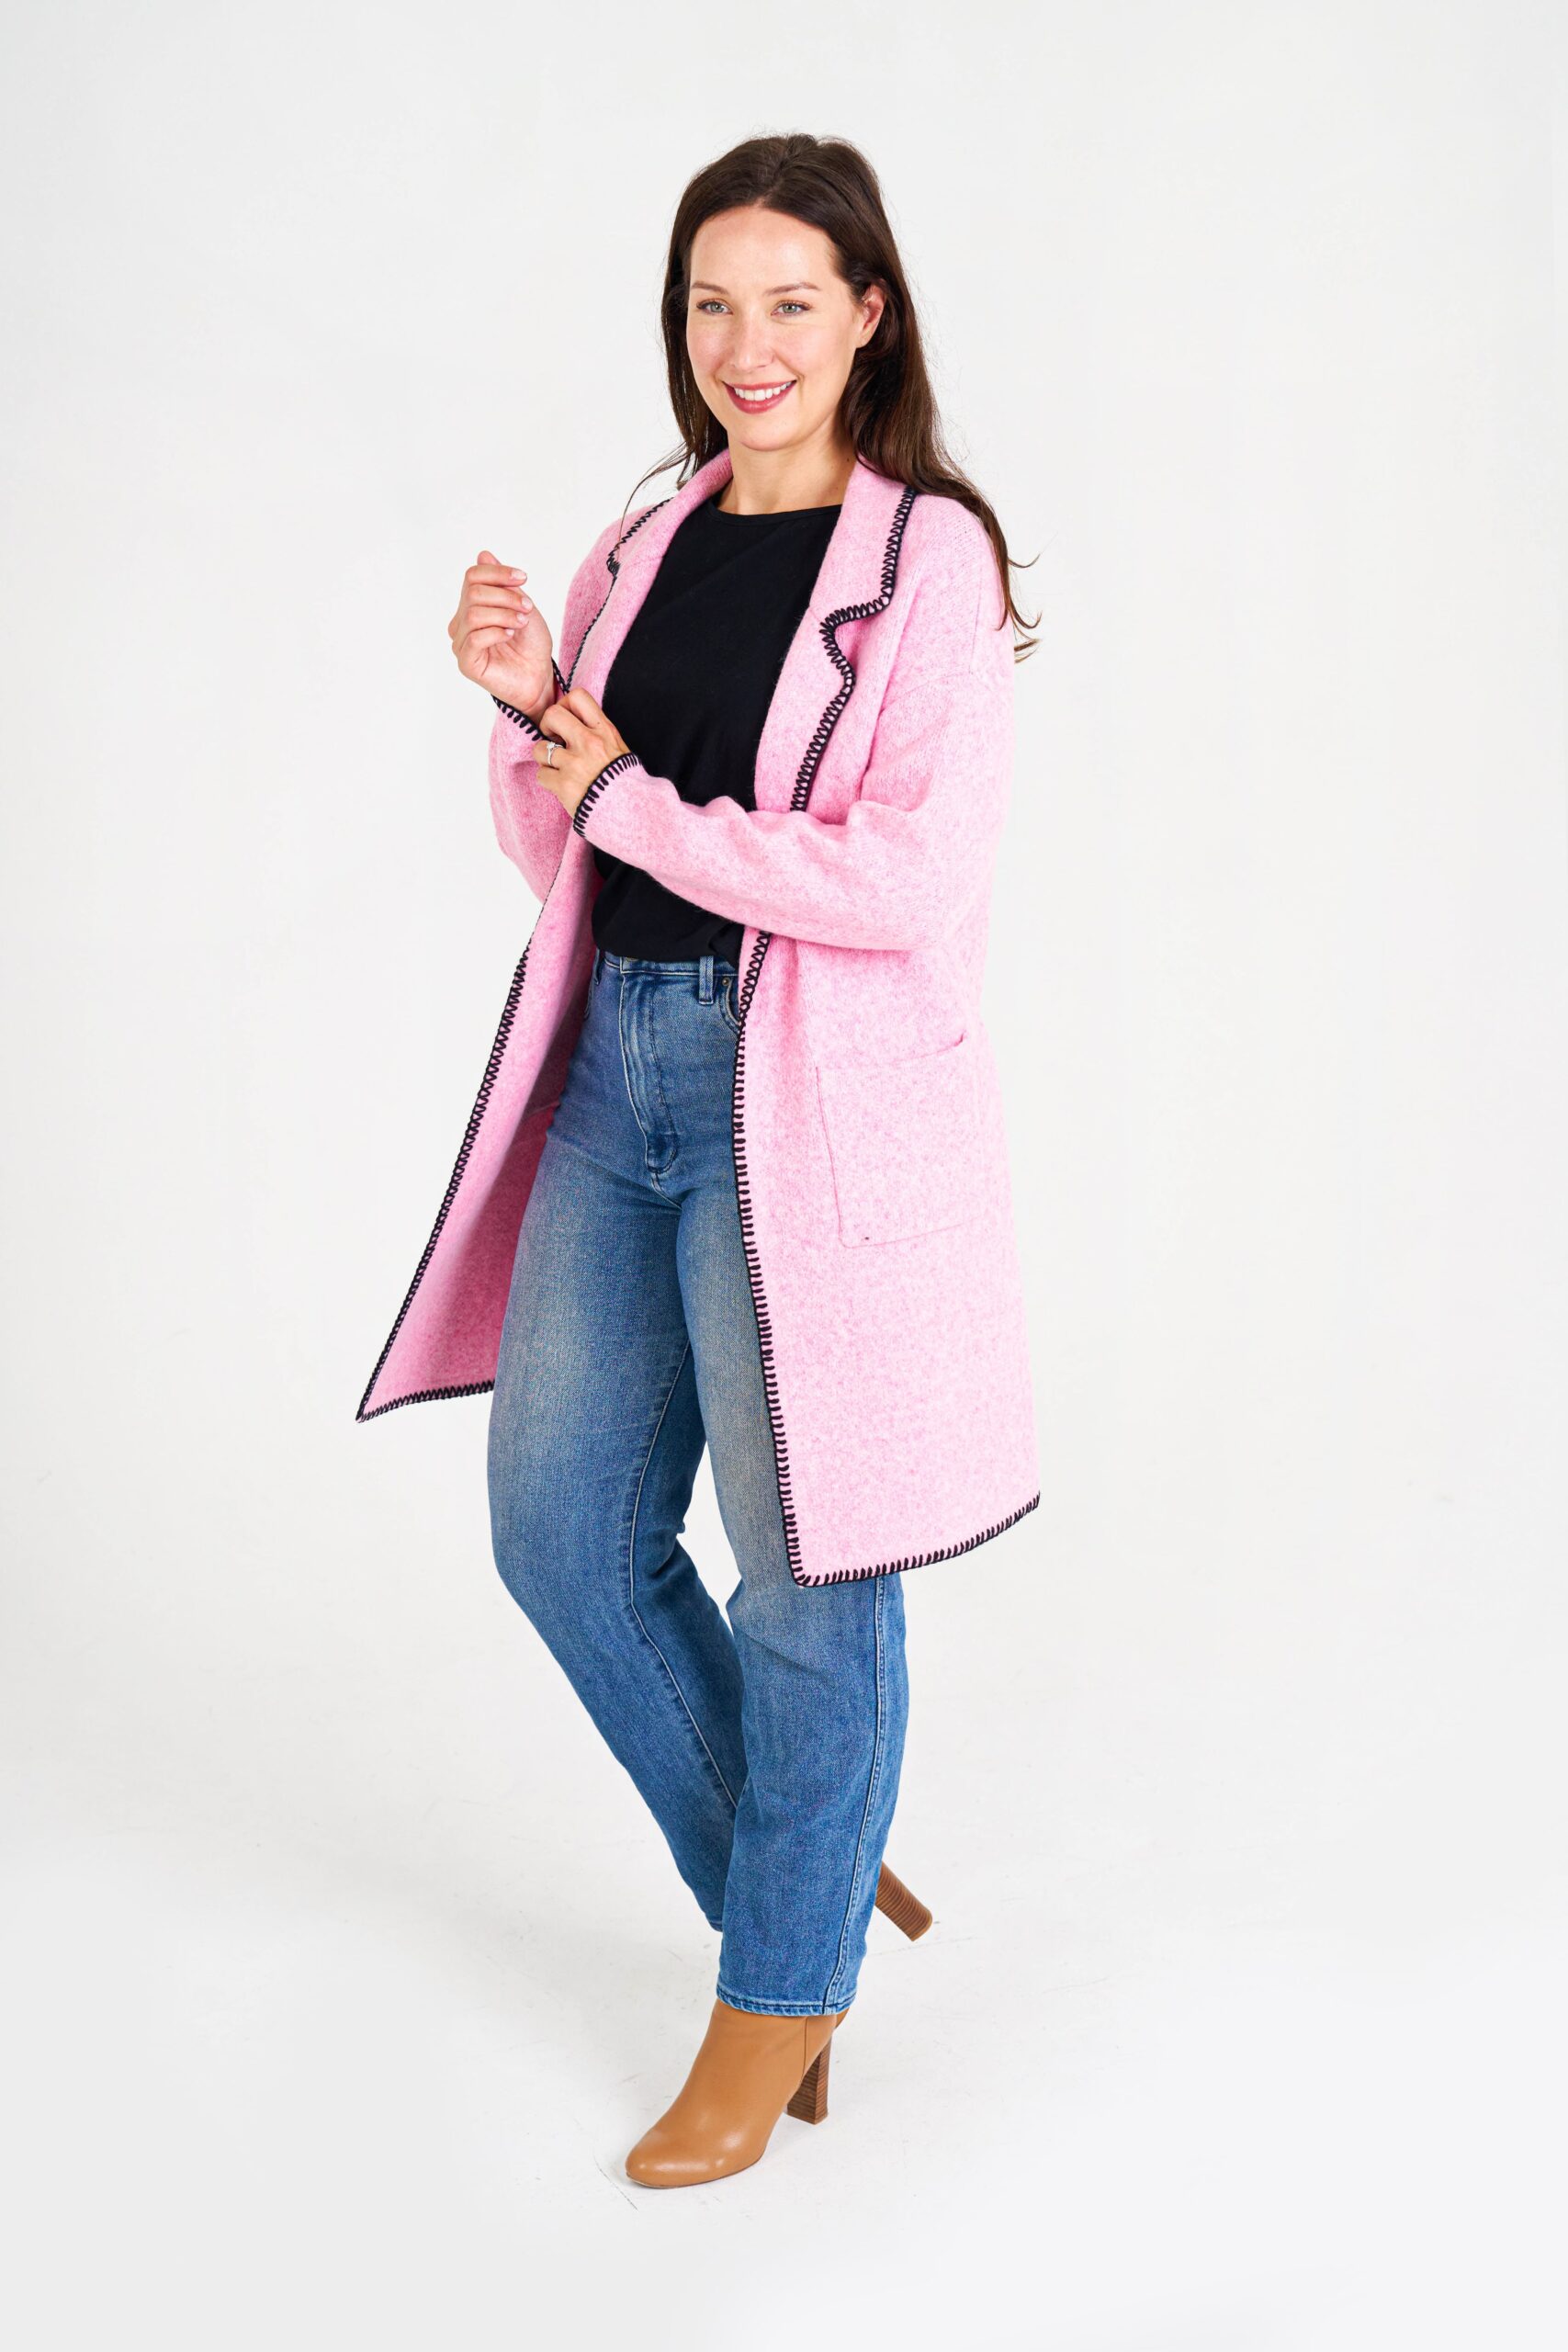 Boho women clothing wholesale Knitwear - KELSEY-pink